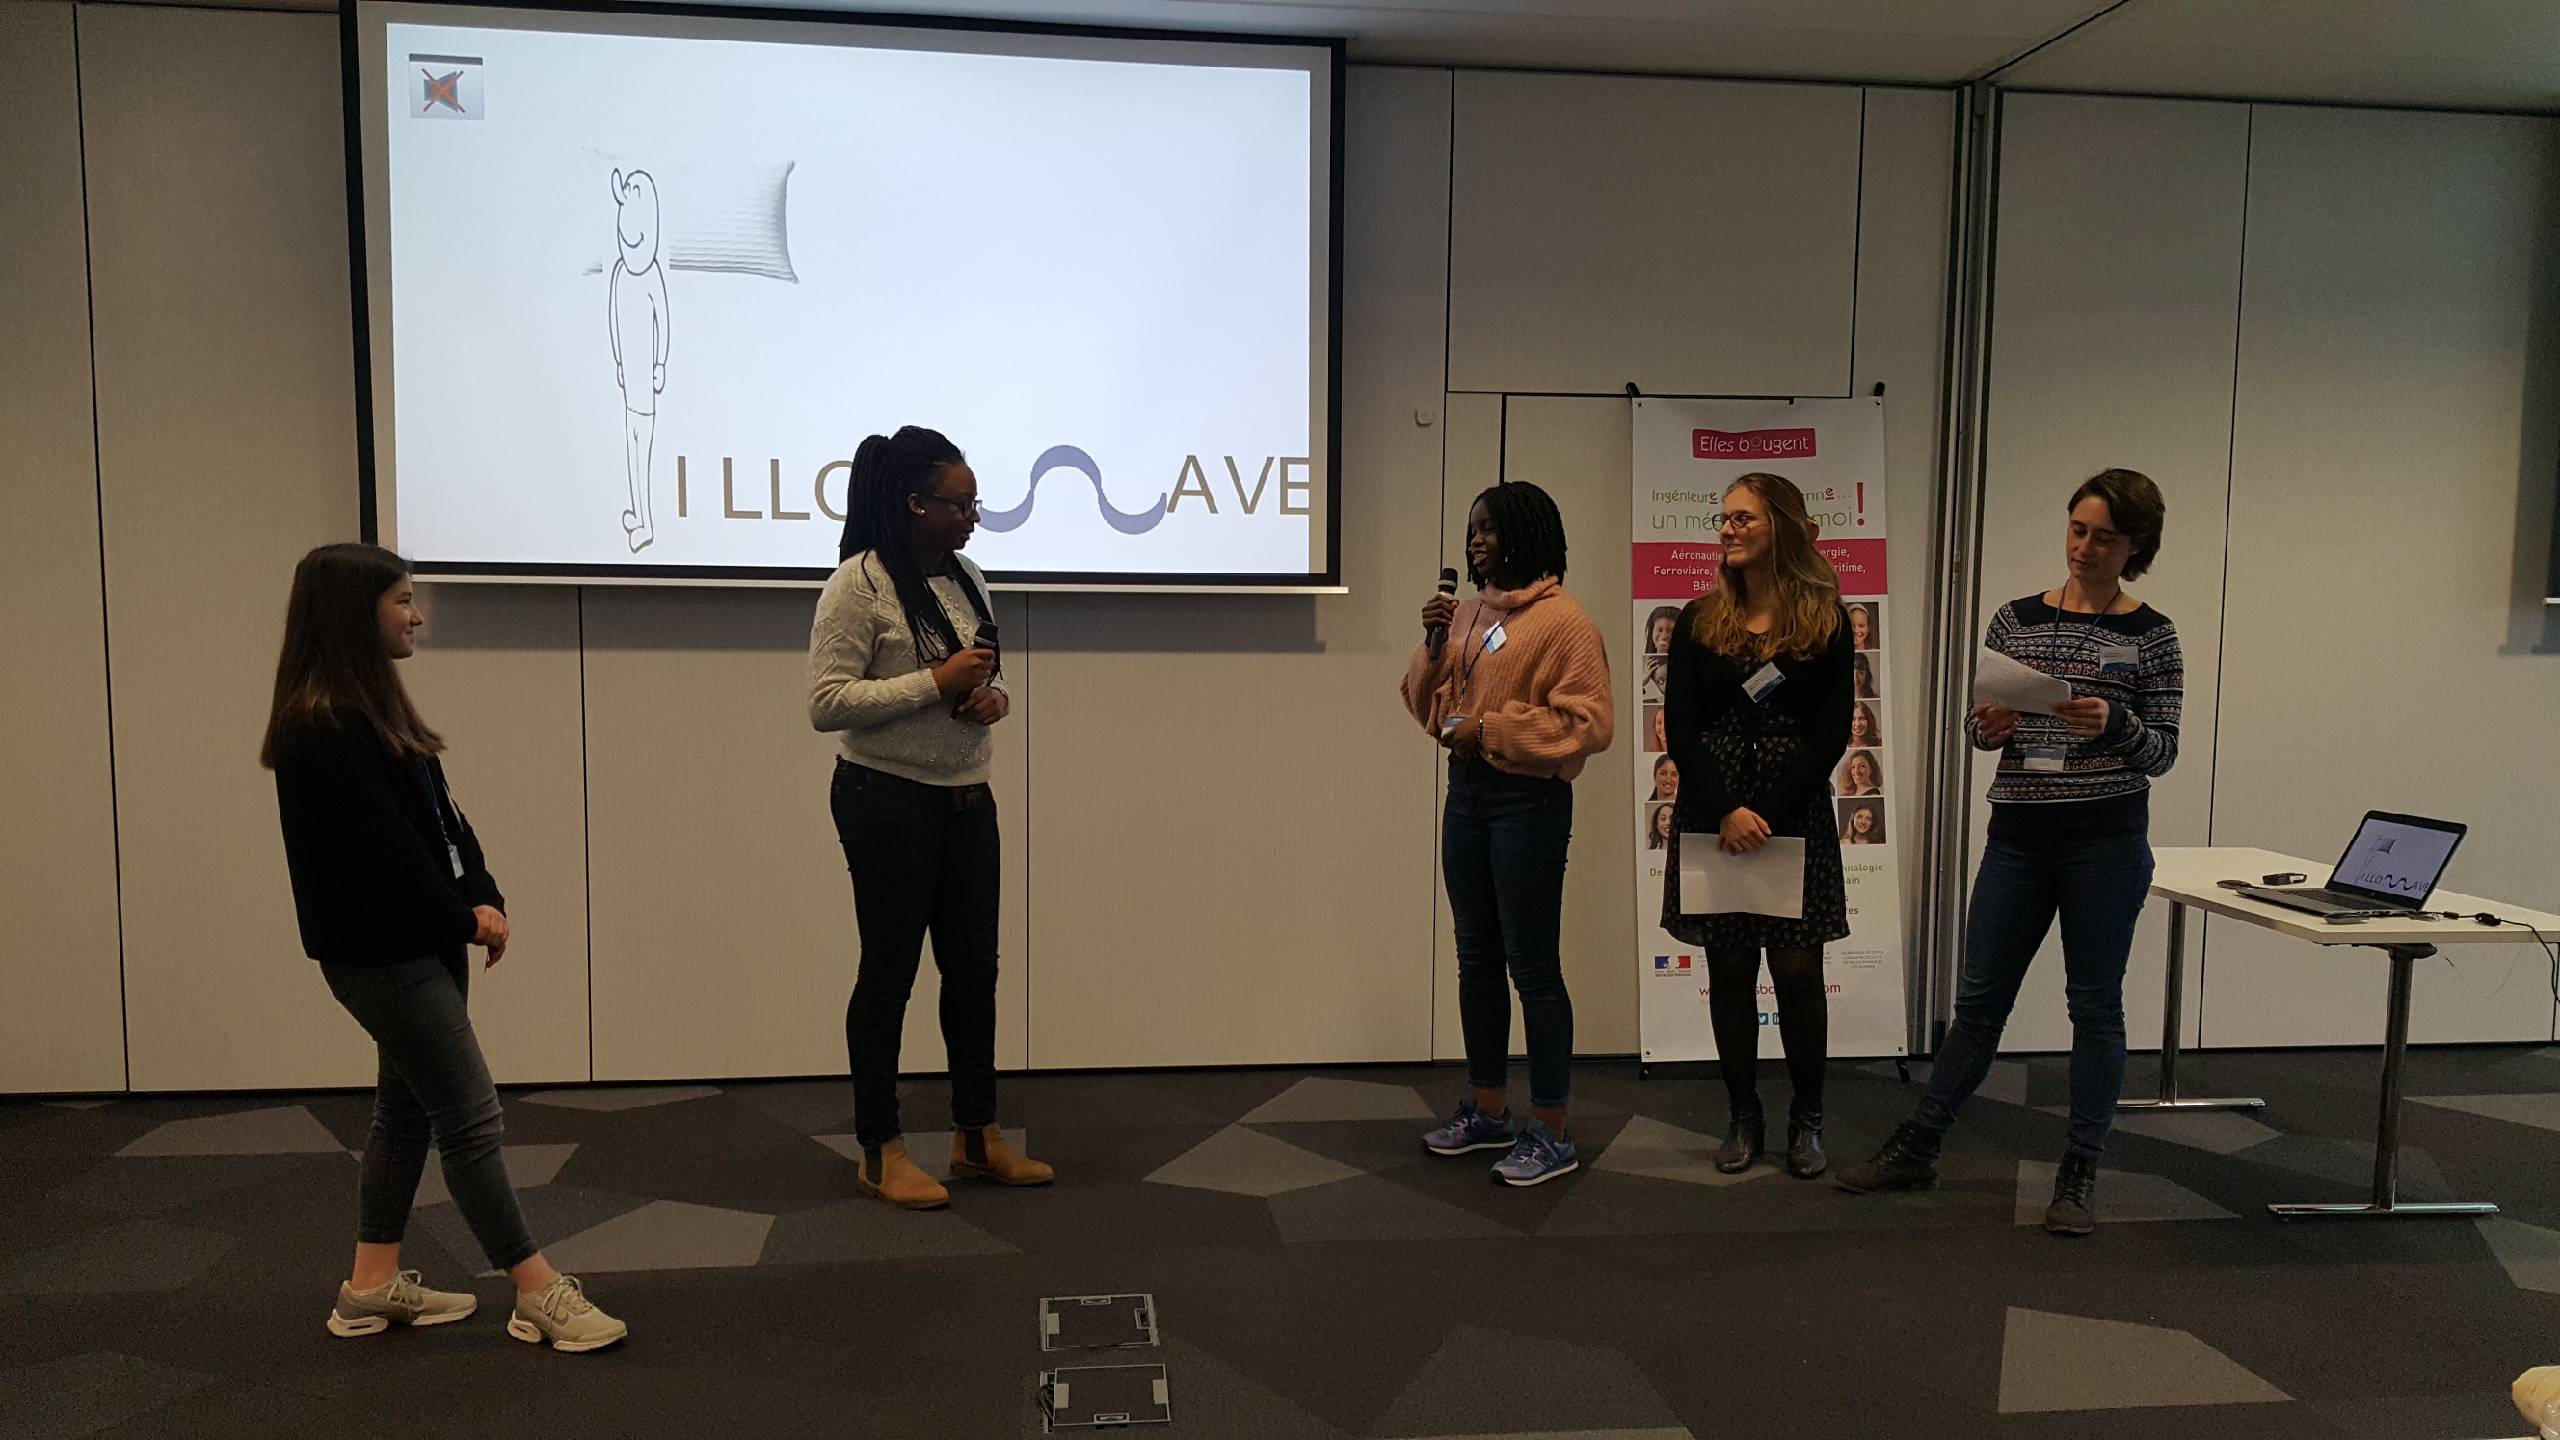 Le projet Pillowave au challenge InnovaTech en région Rhône-Alpes